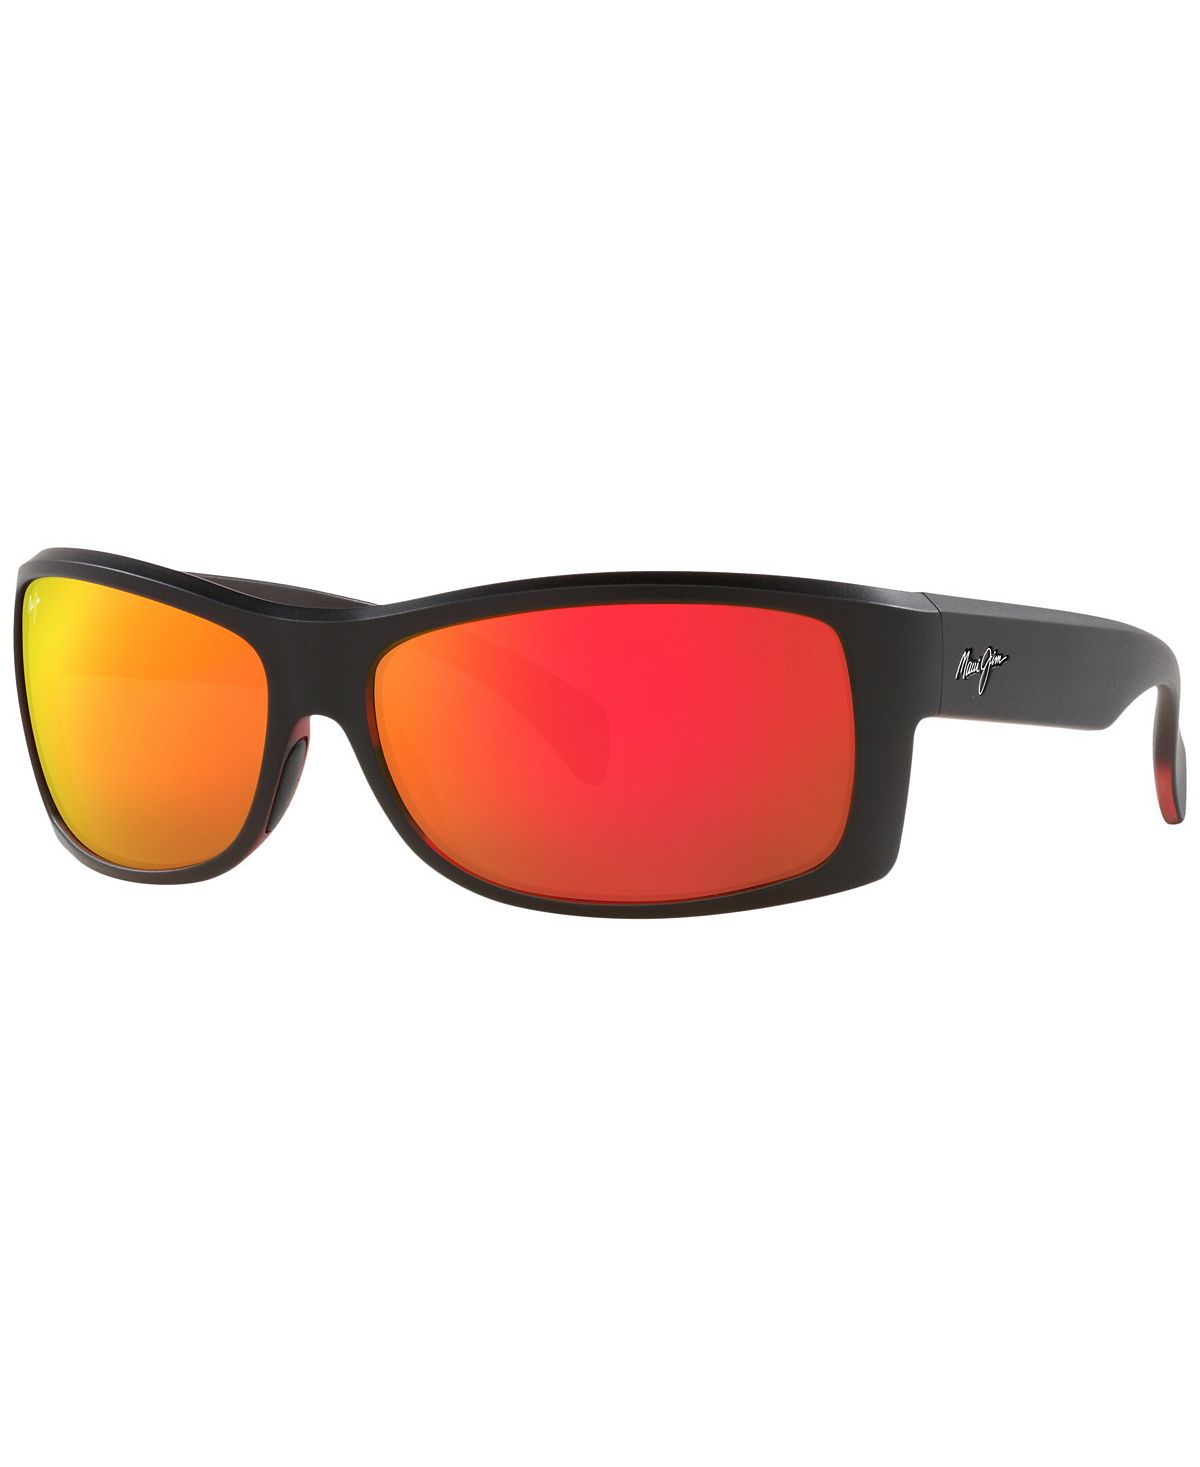 Поляризованные солнцезащитные очки унисекс, EQUATOR 65 Maui Jim, черный